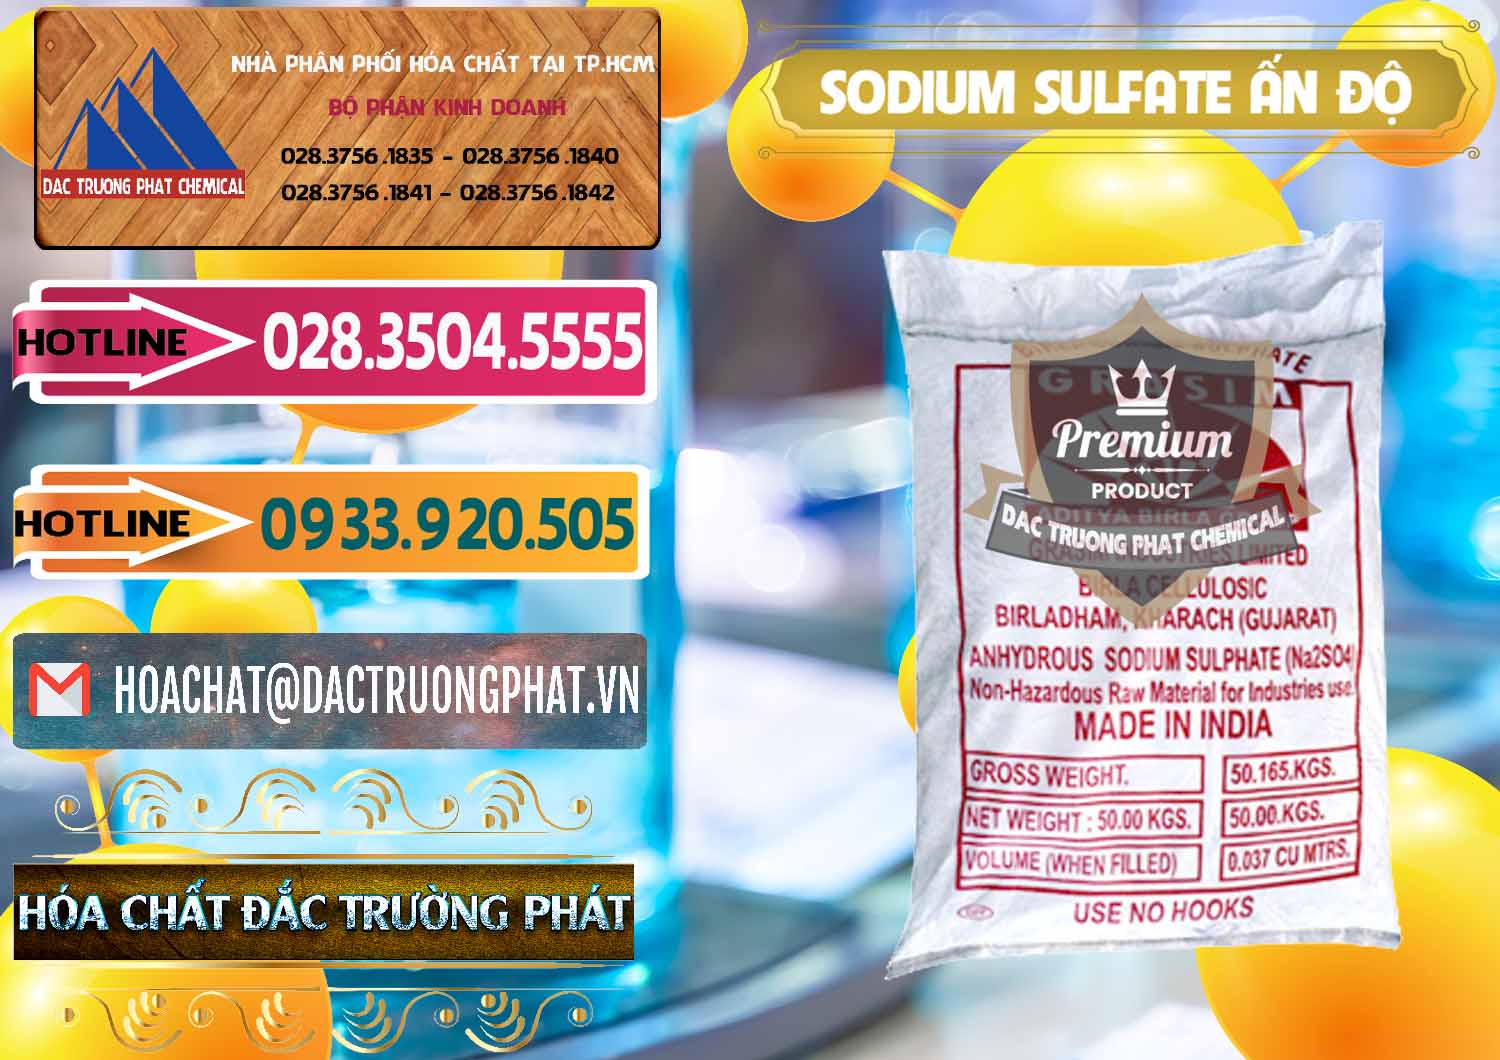 Cty chuyên nhập khẩu _ bán Sodium Sulphate - Muối Sunfat Na2SO4 Aditya Birla Grasim Ấn Độ India - 0462 - Công ty chuyên cung cấp - kinh doanh hóa chất tại TP.HCM - dactruongphat.vn